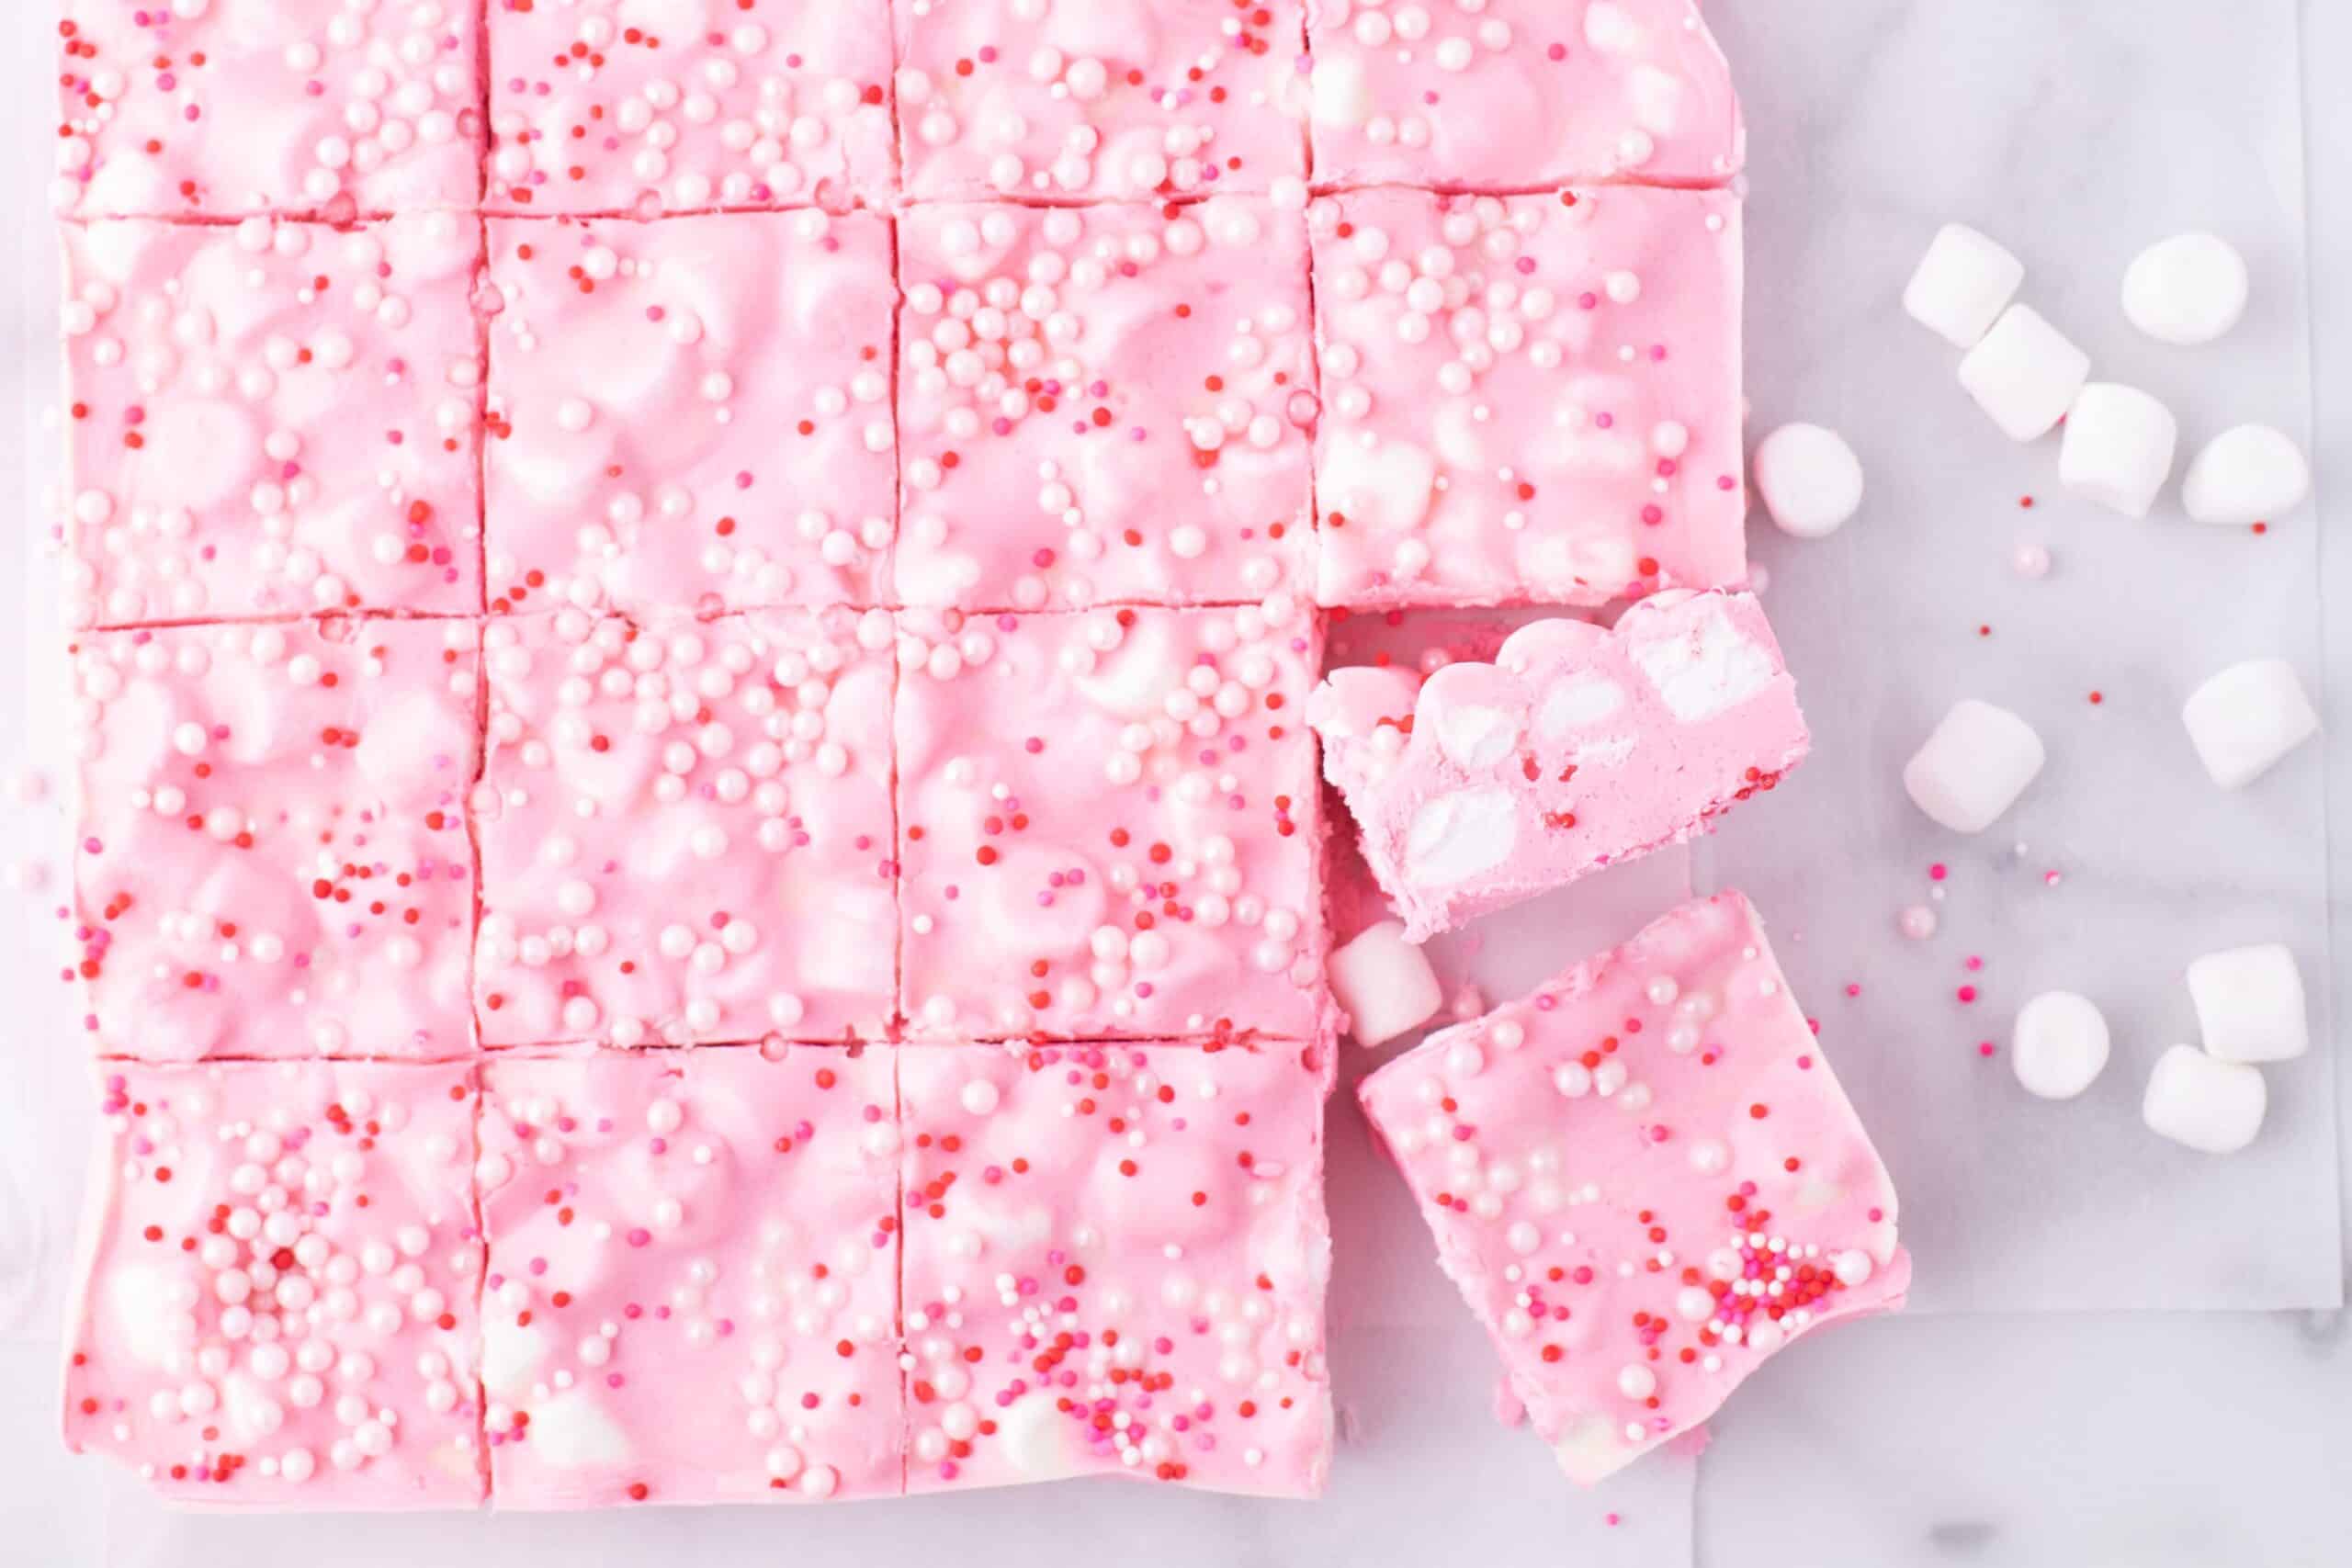 Bubblegum Fudge (pink fudge recipe)